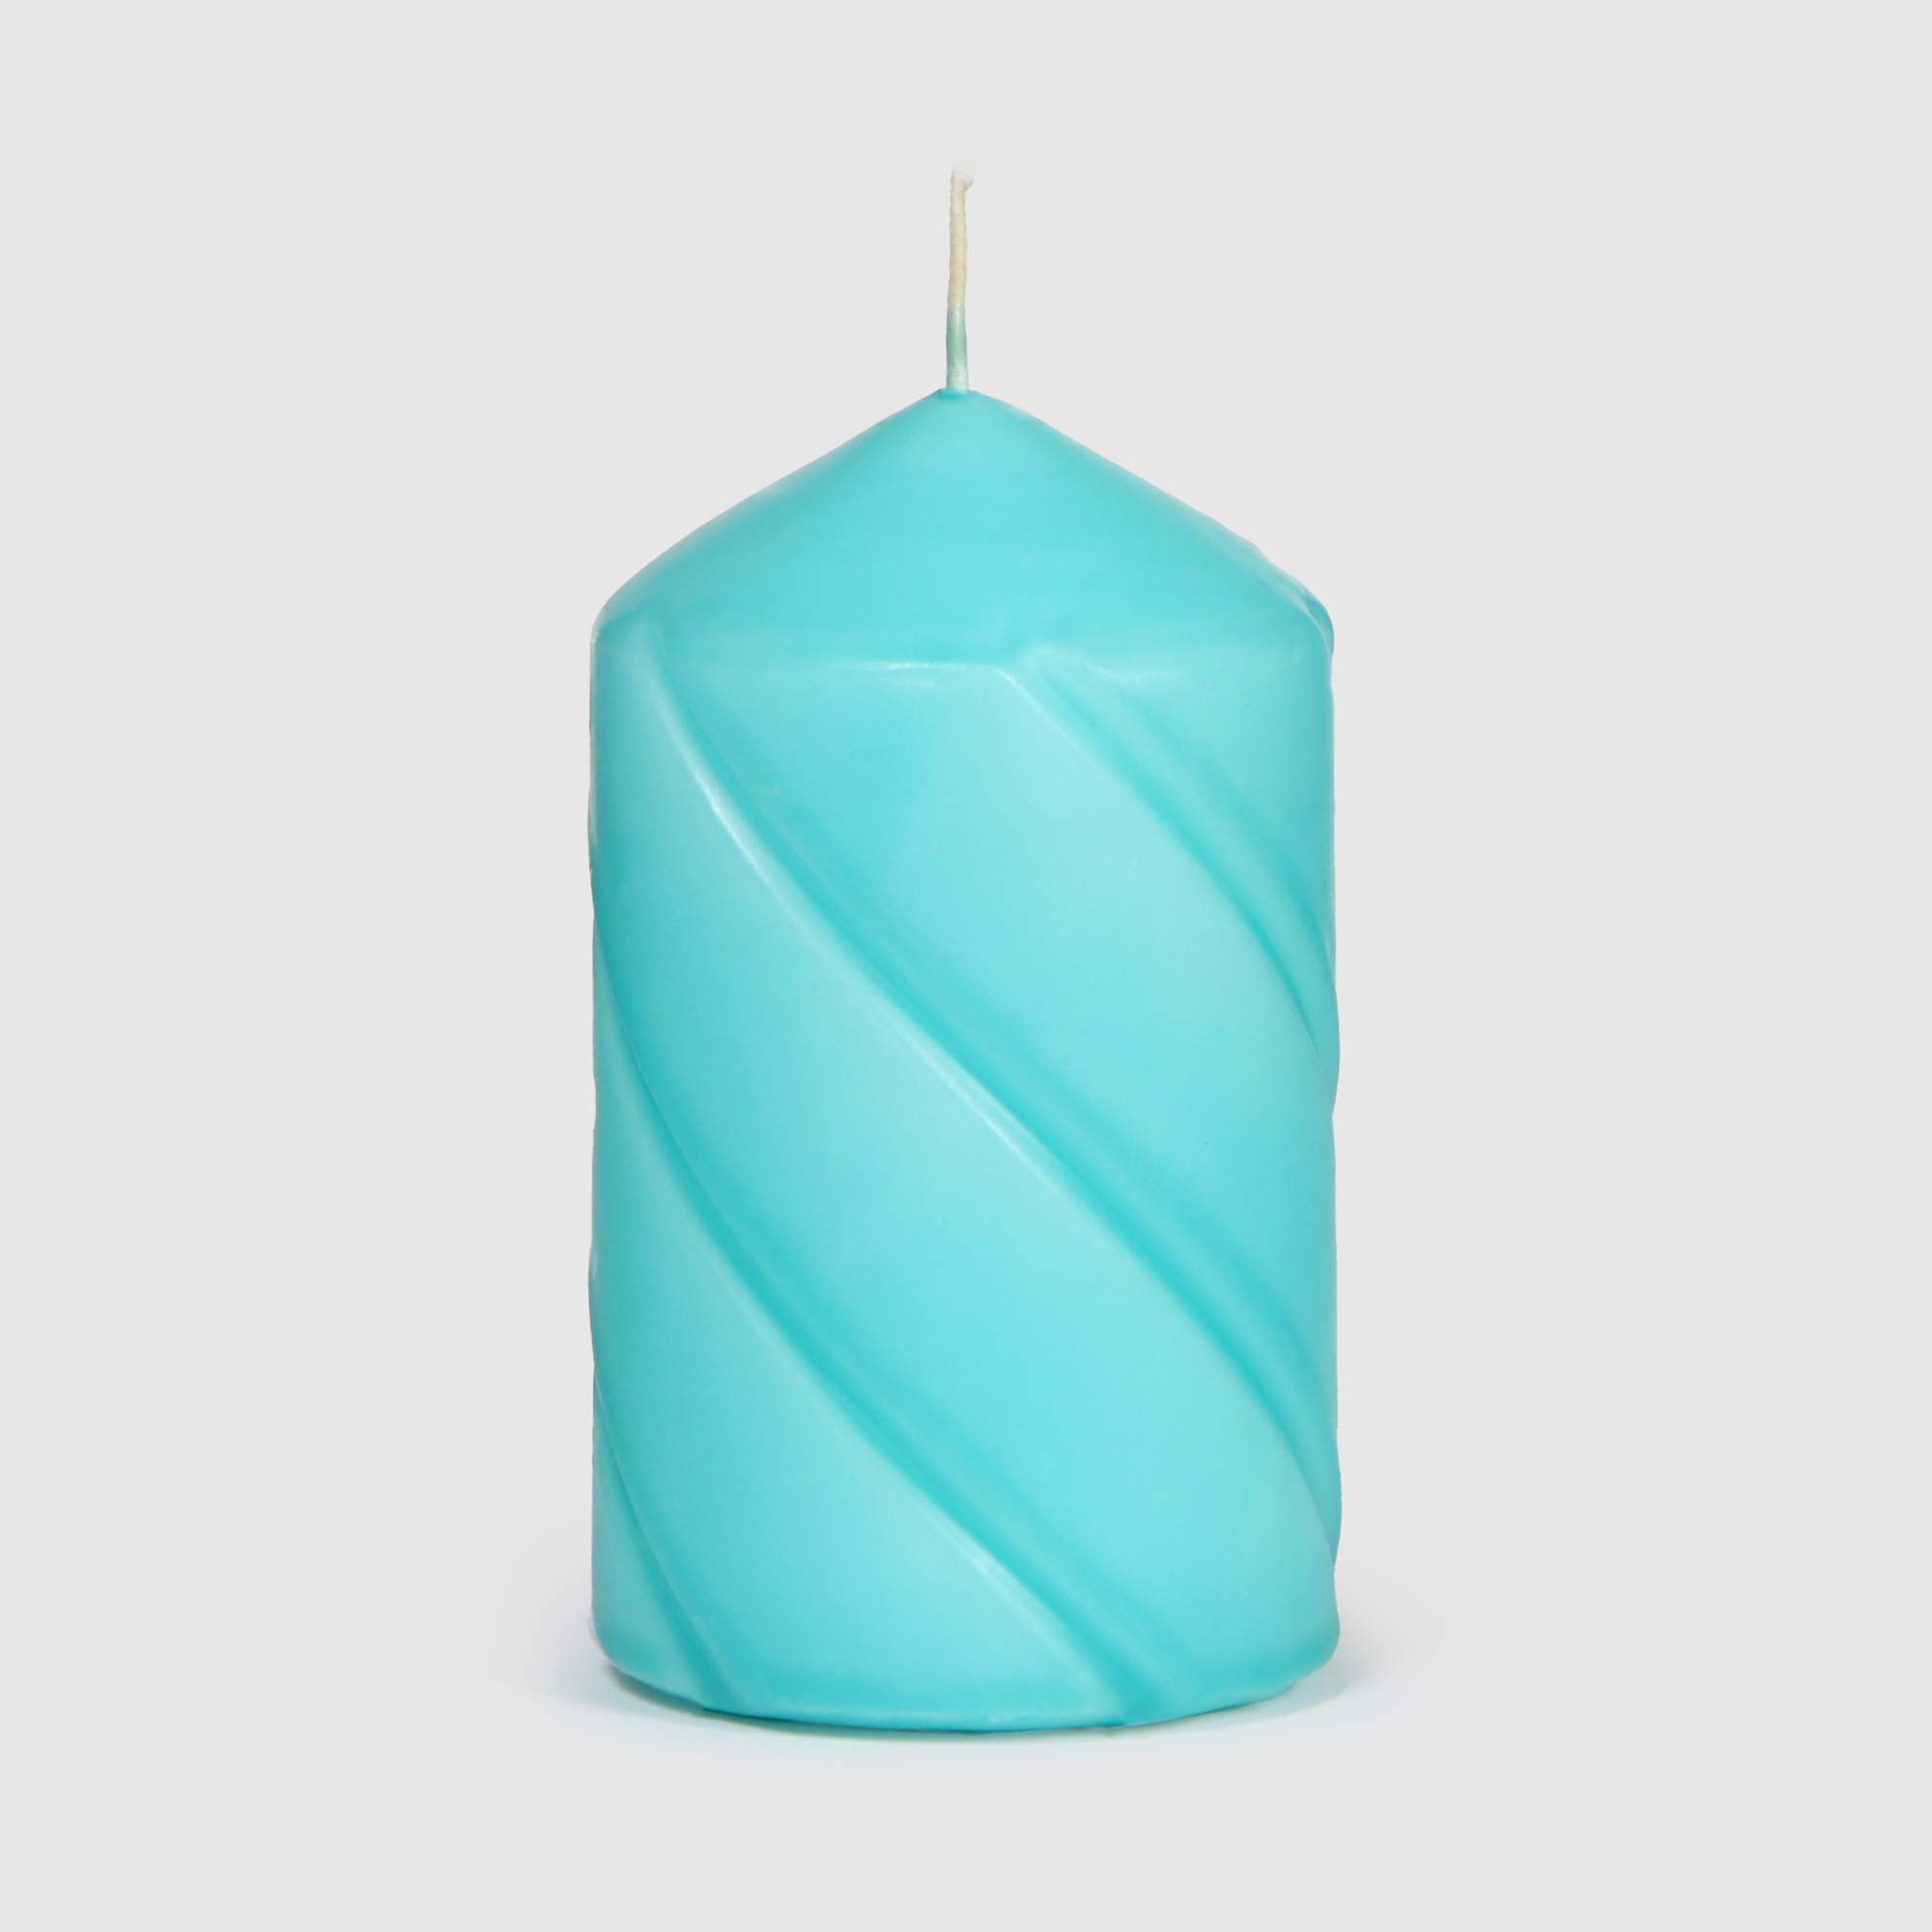 Свеча столбик витой Home Interiors голубой 7х12 см